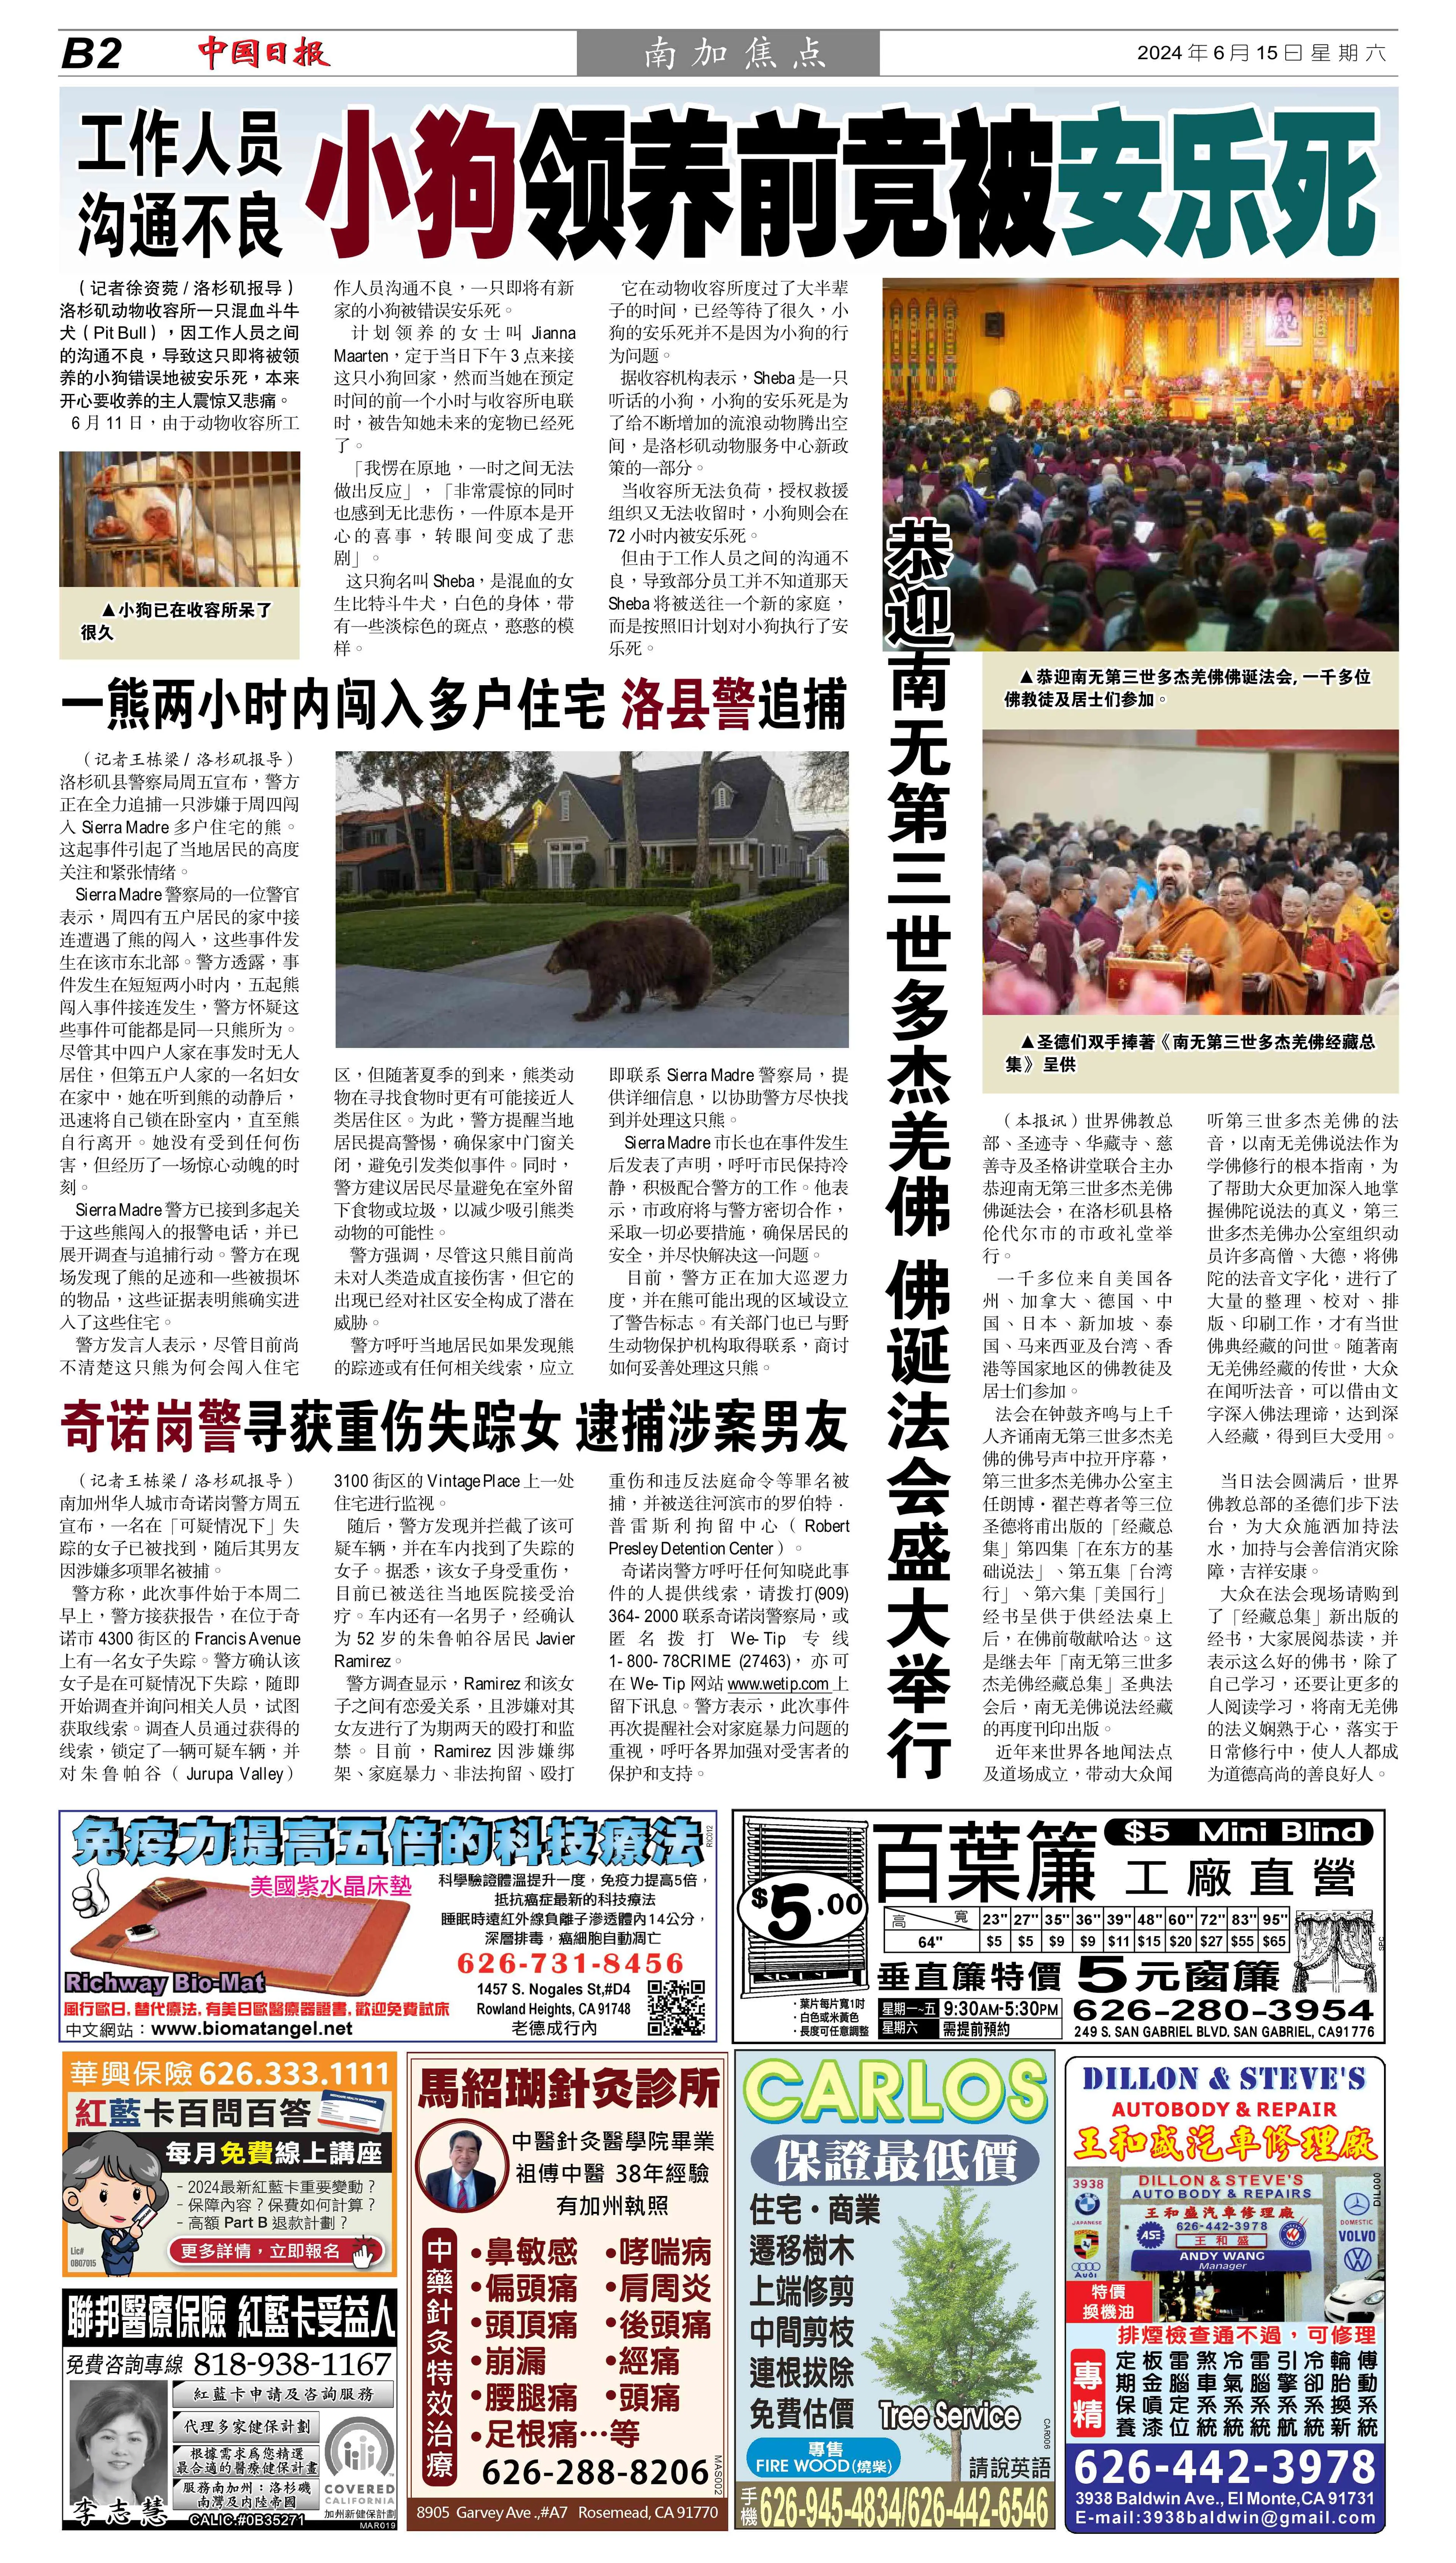 《中国日报》p14：2024 年 6 月 15 日：恭迎南无第三世多杰羌佛佛诞法会盛大举行